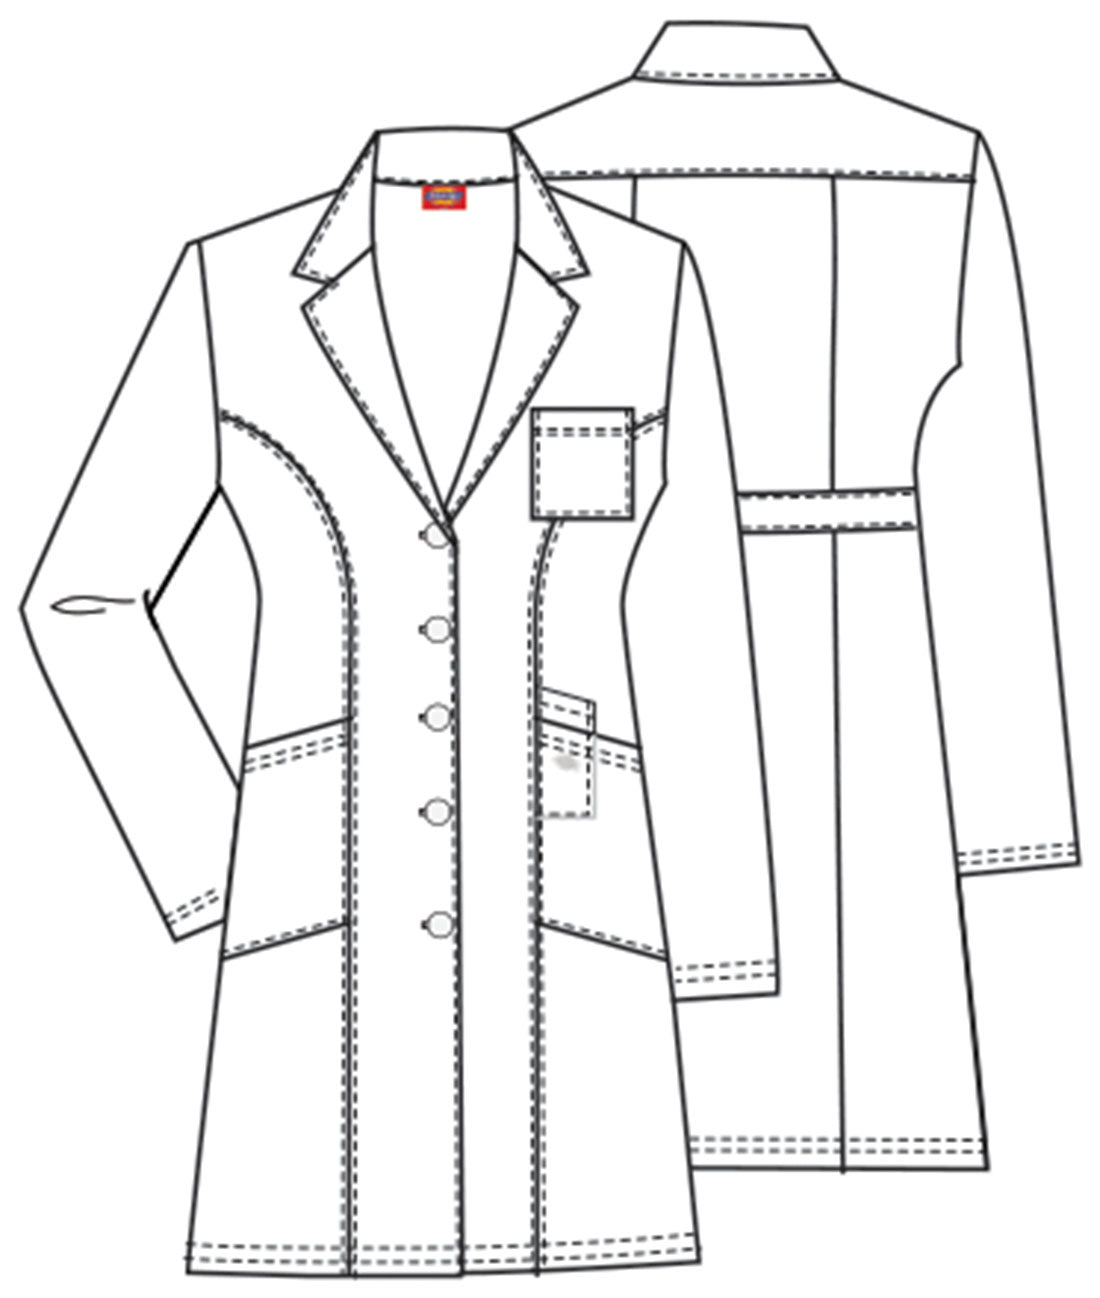 Dickies Professional Women's 37" Lab Coat 82401